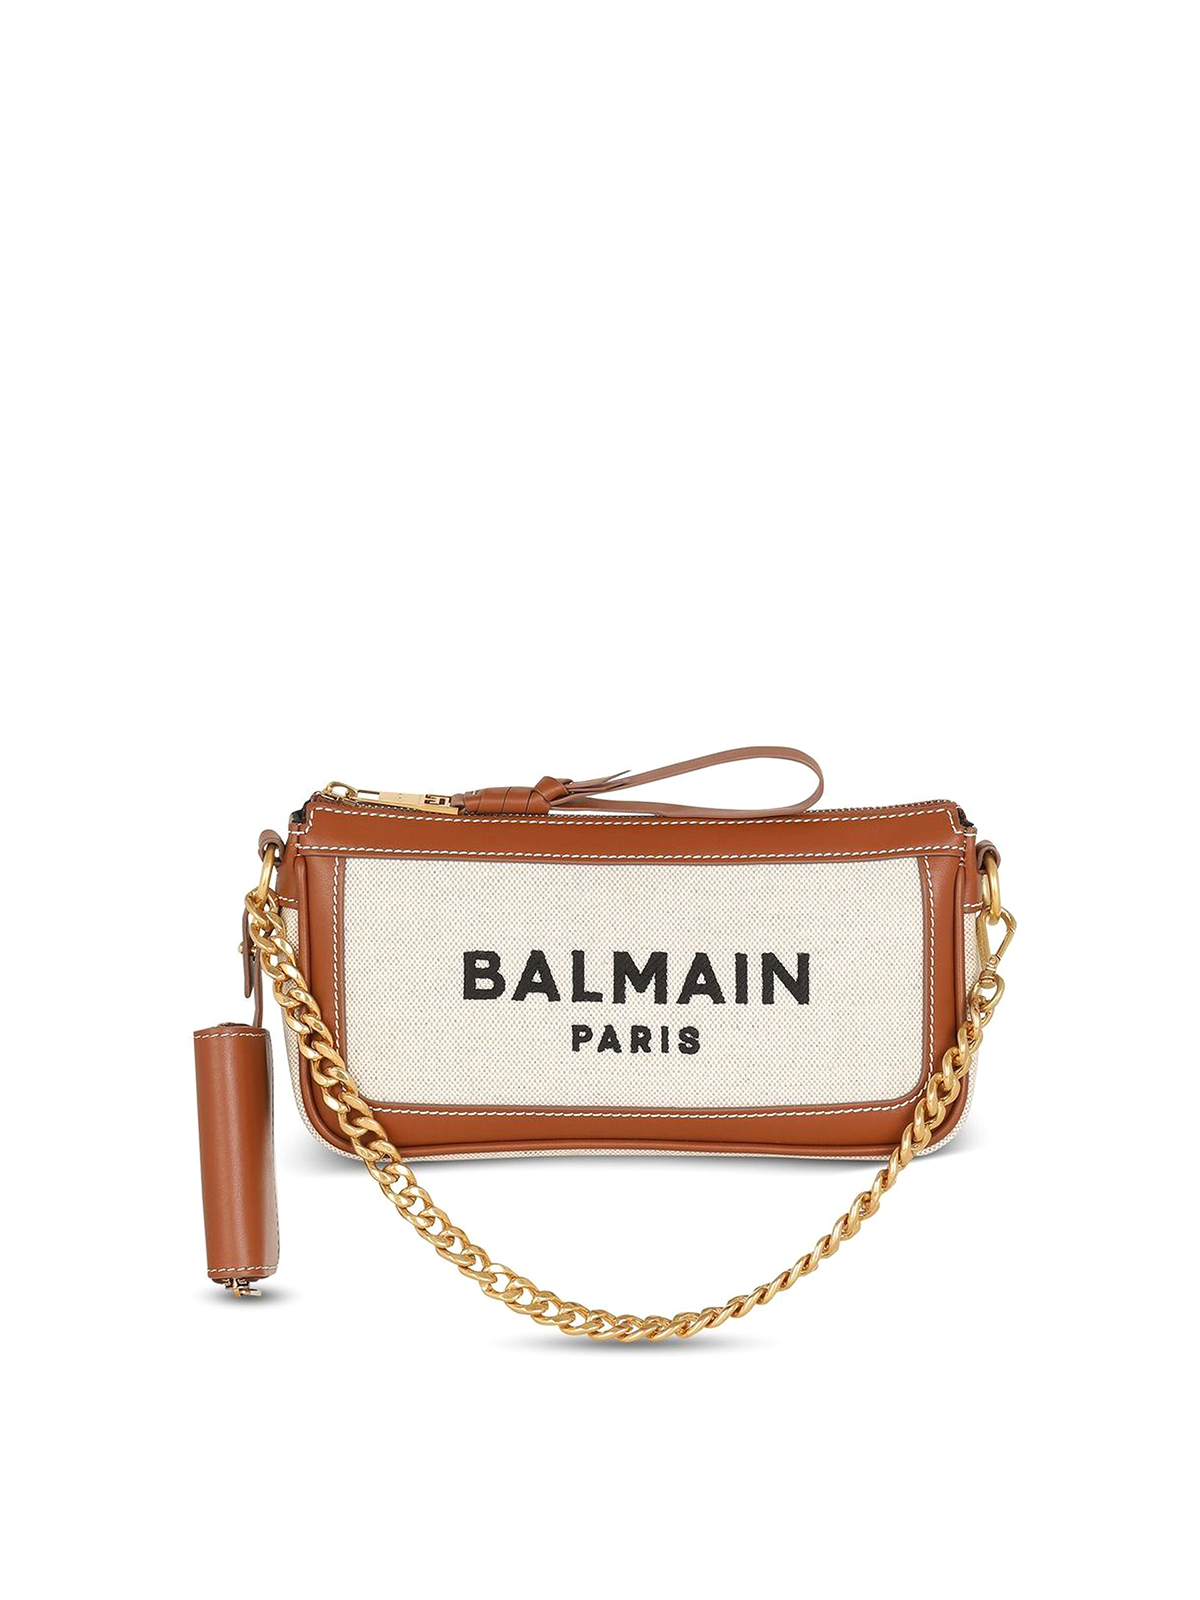 BALMAIN B-ARMY CLUTCH BAG